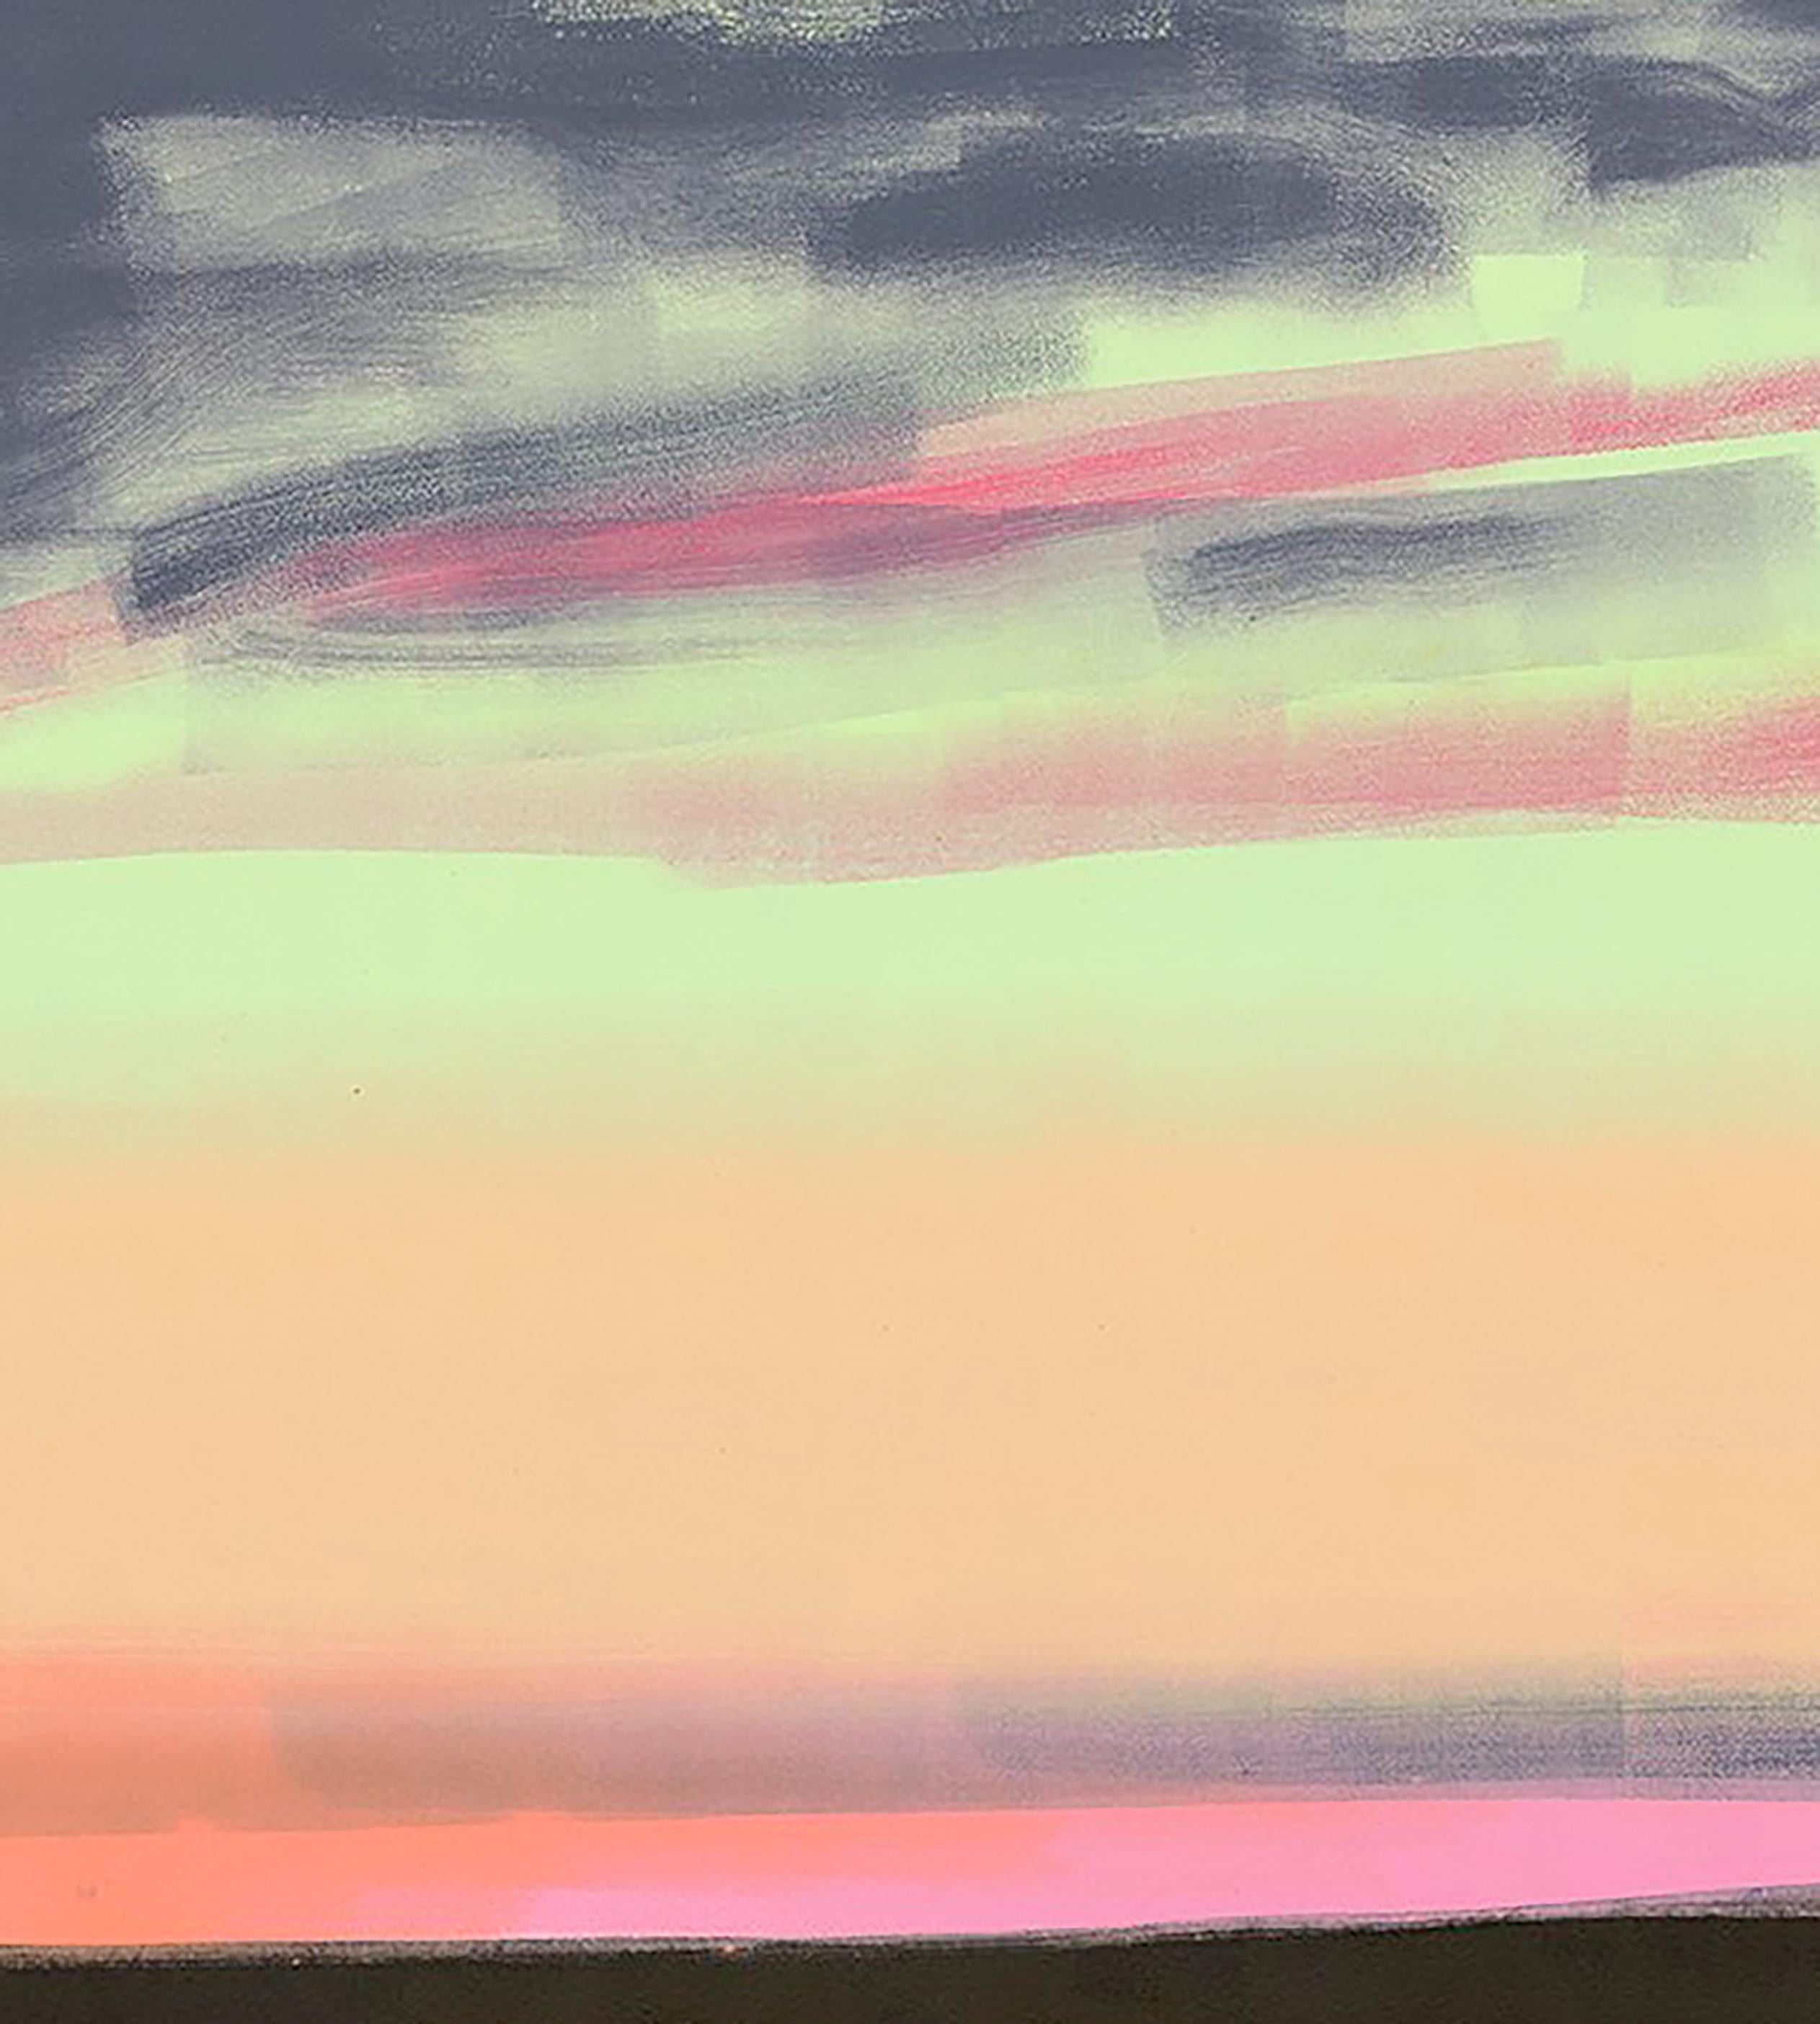 Rotes Licht, Landschaft, Meereslandschaft, rot, blau, grün, gelb, dunkle Farben, Triptychon – Print von Rachel Burgess